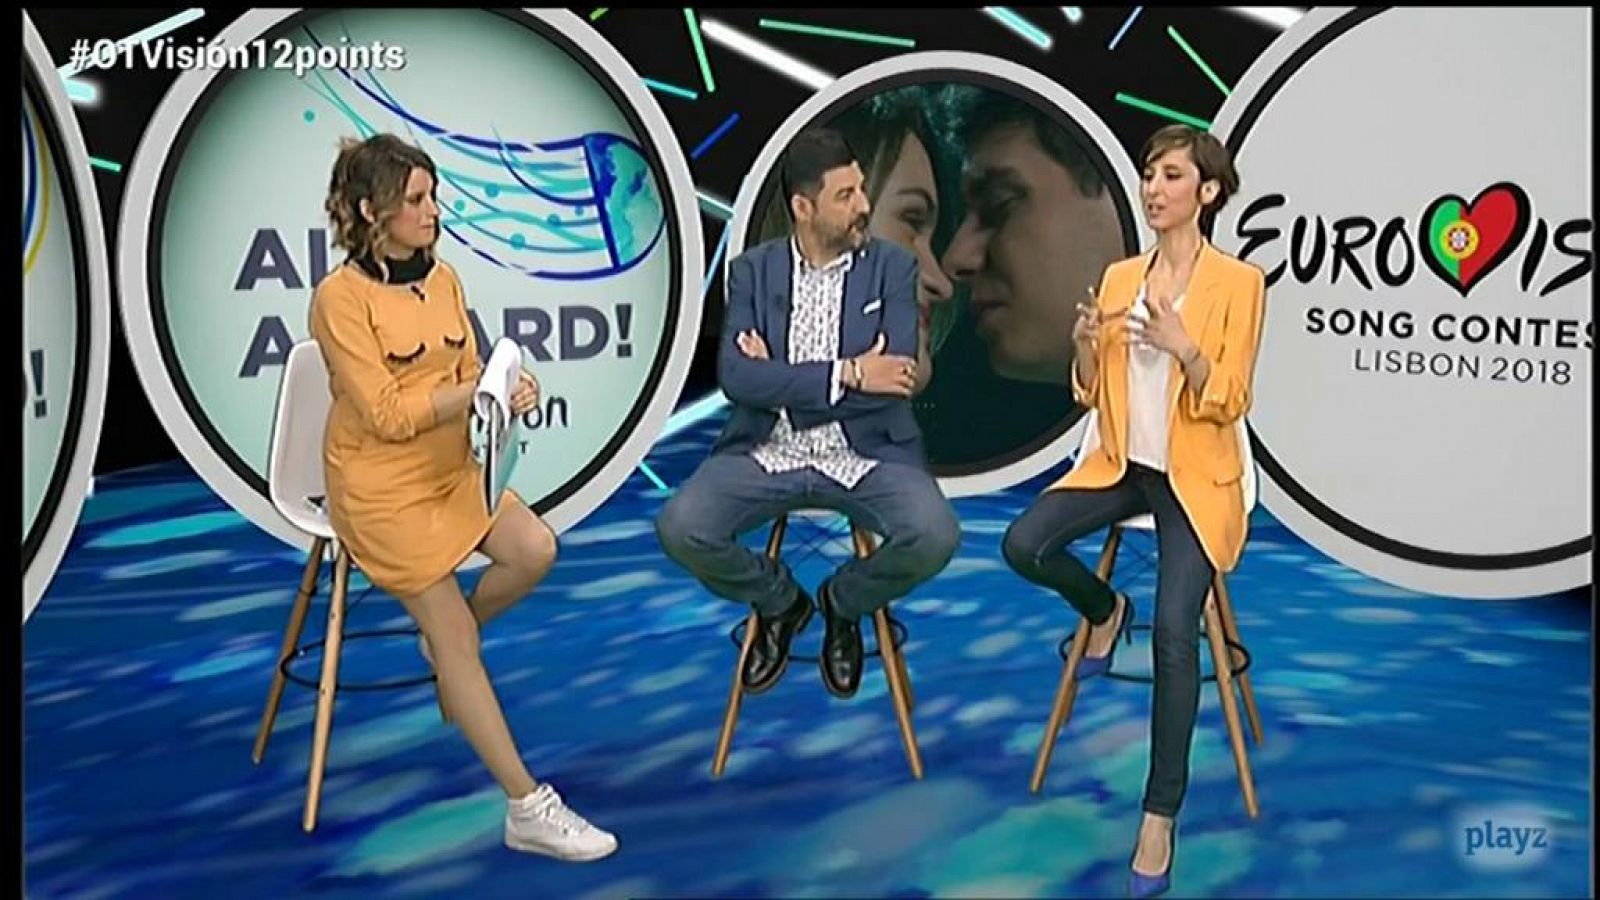 Eurovisión 2018: Tony Aguilar y Julia Varela dicen sus favoritos - OTVisión